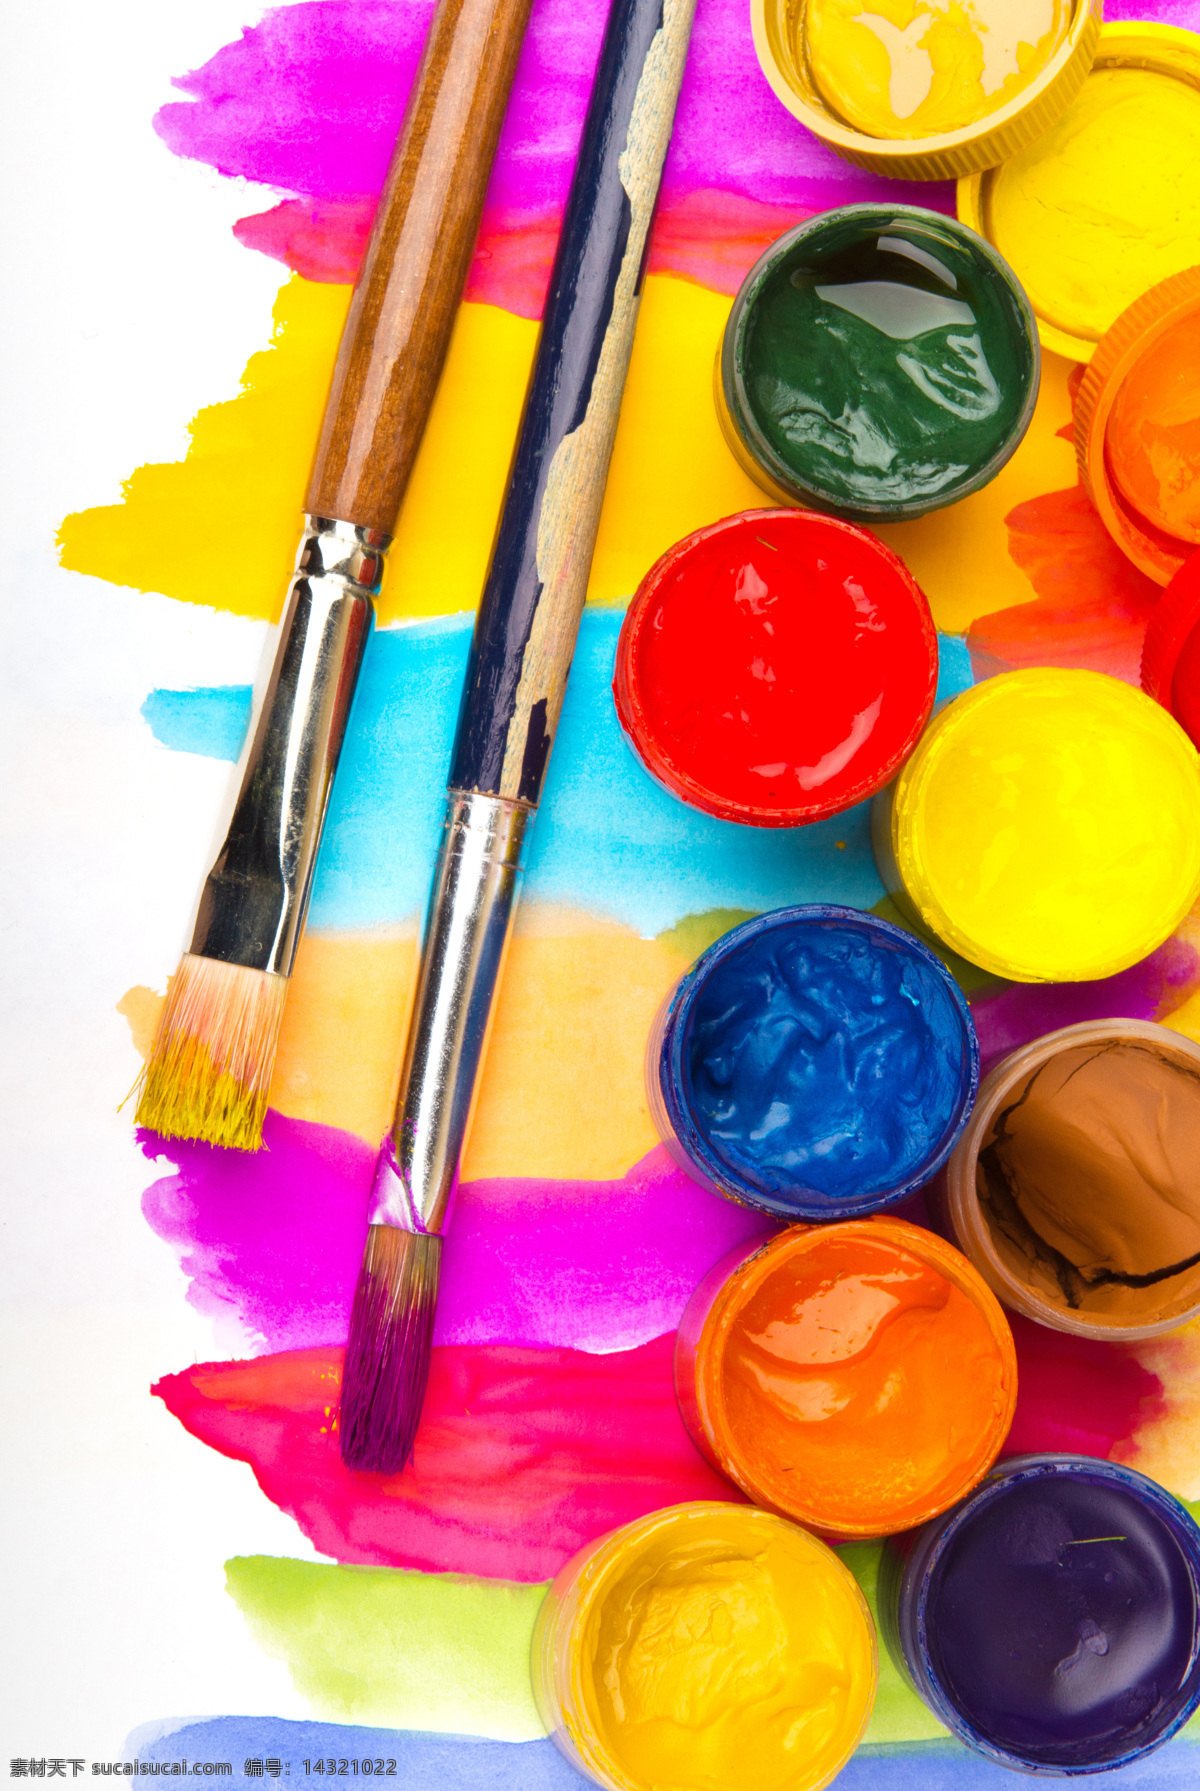 颜料盒与刷子 颜料盒 刷子 彩色 油漆 颜料 水彩 其他类别 生活百科 黄色